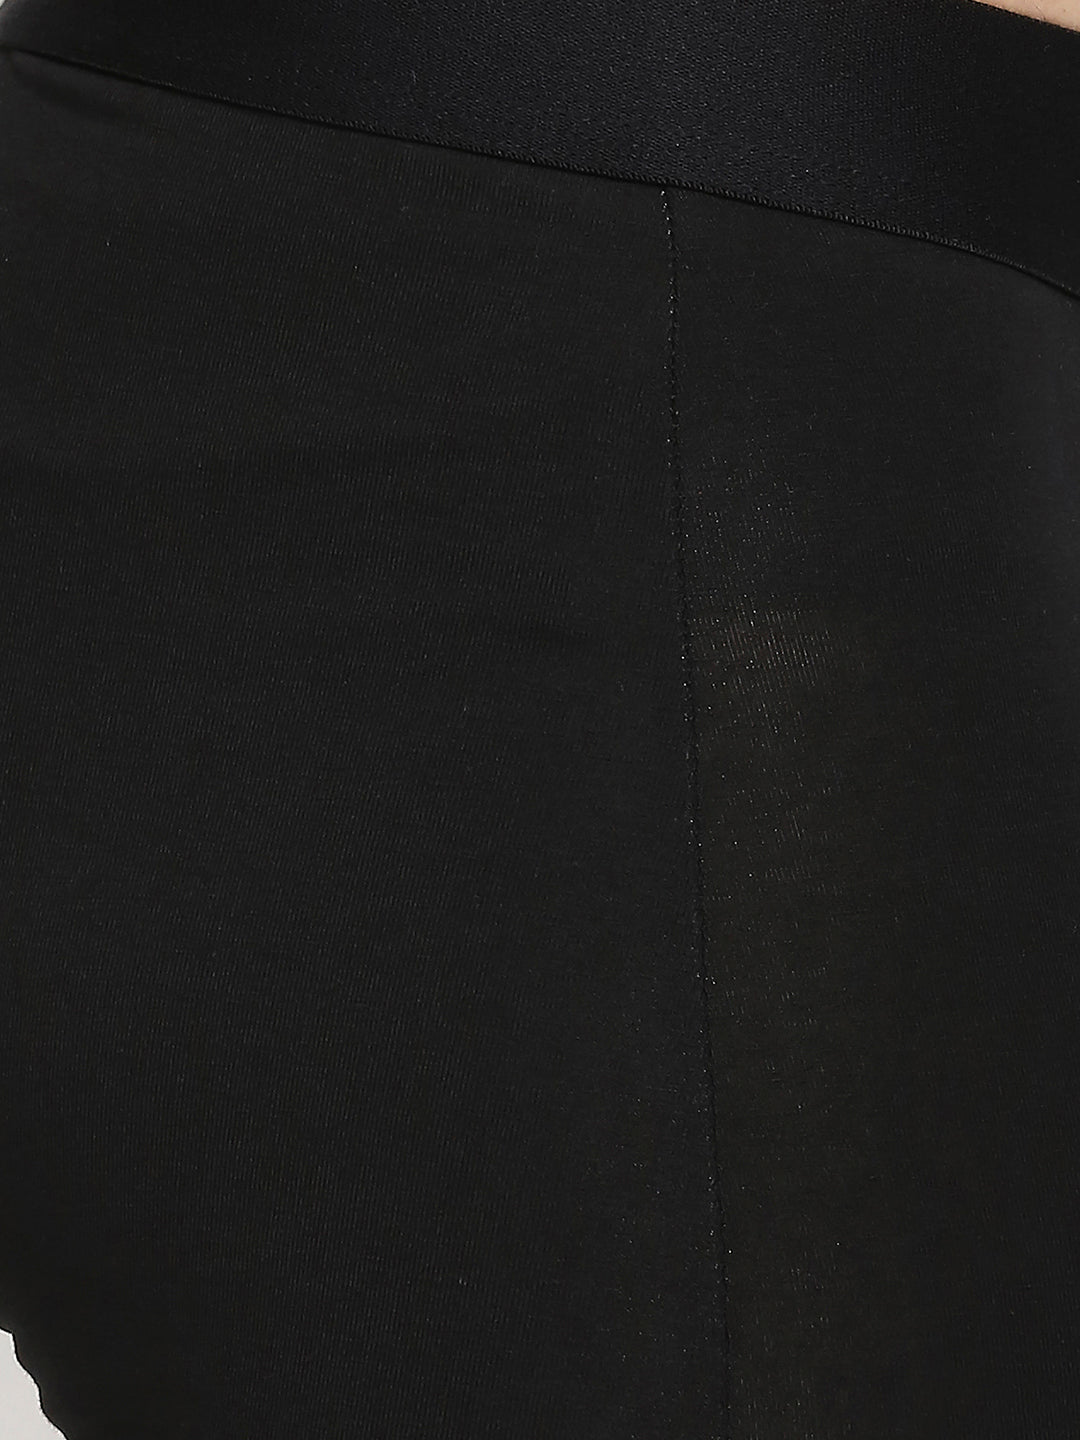 Men Premium Cotton Blend Black Trunk- UnderJeans by Spykar